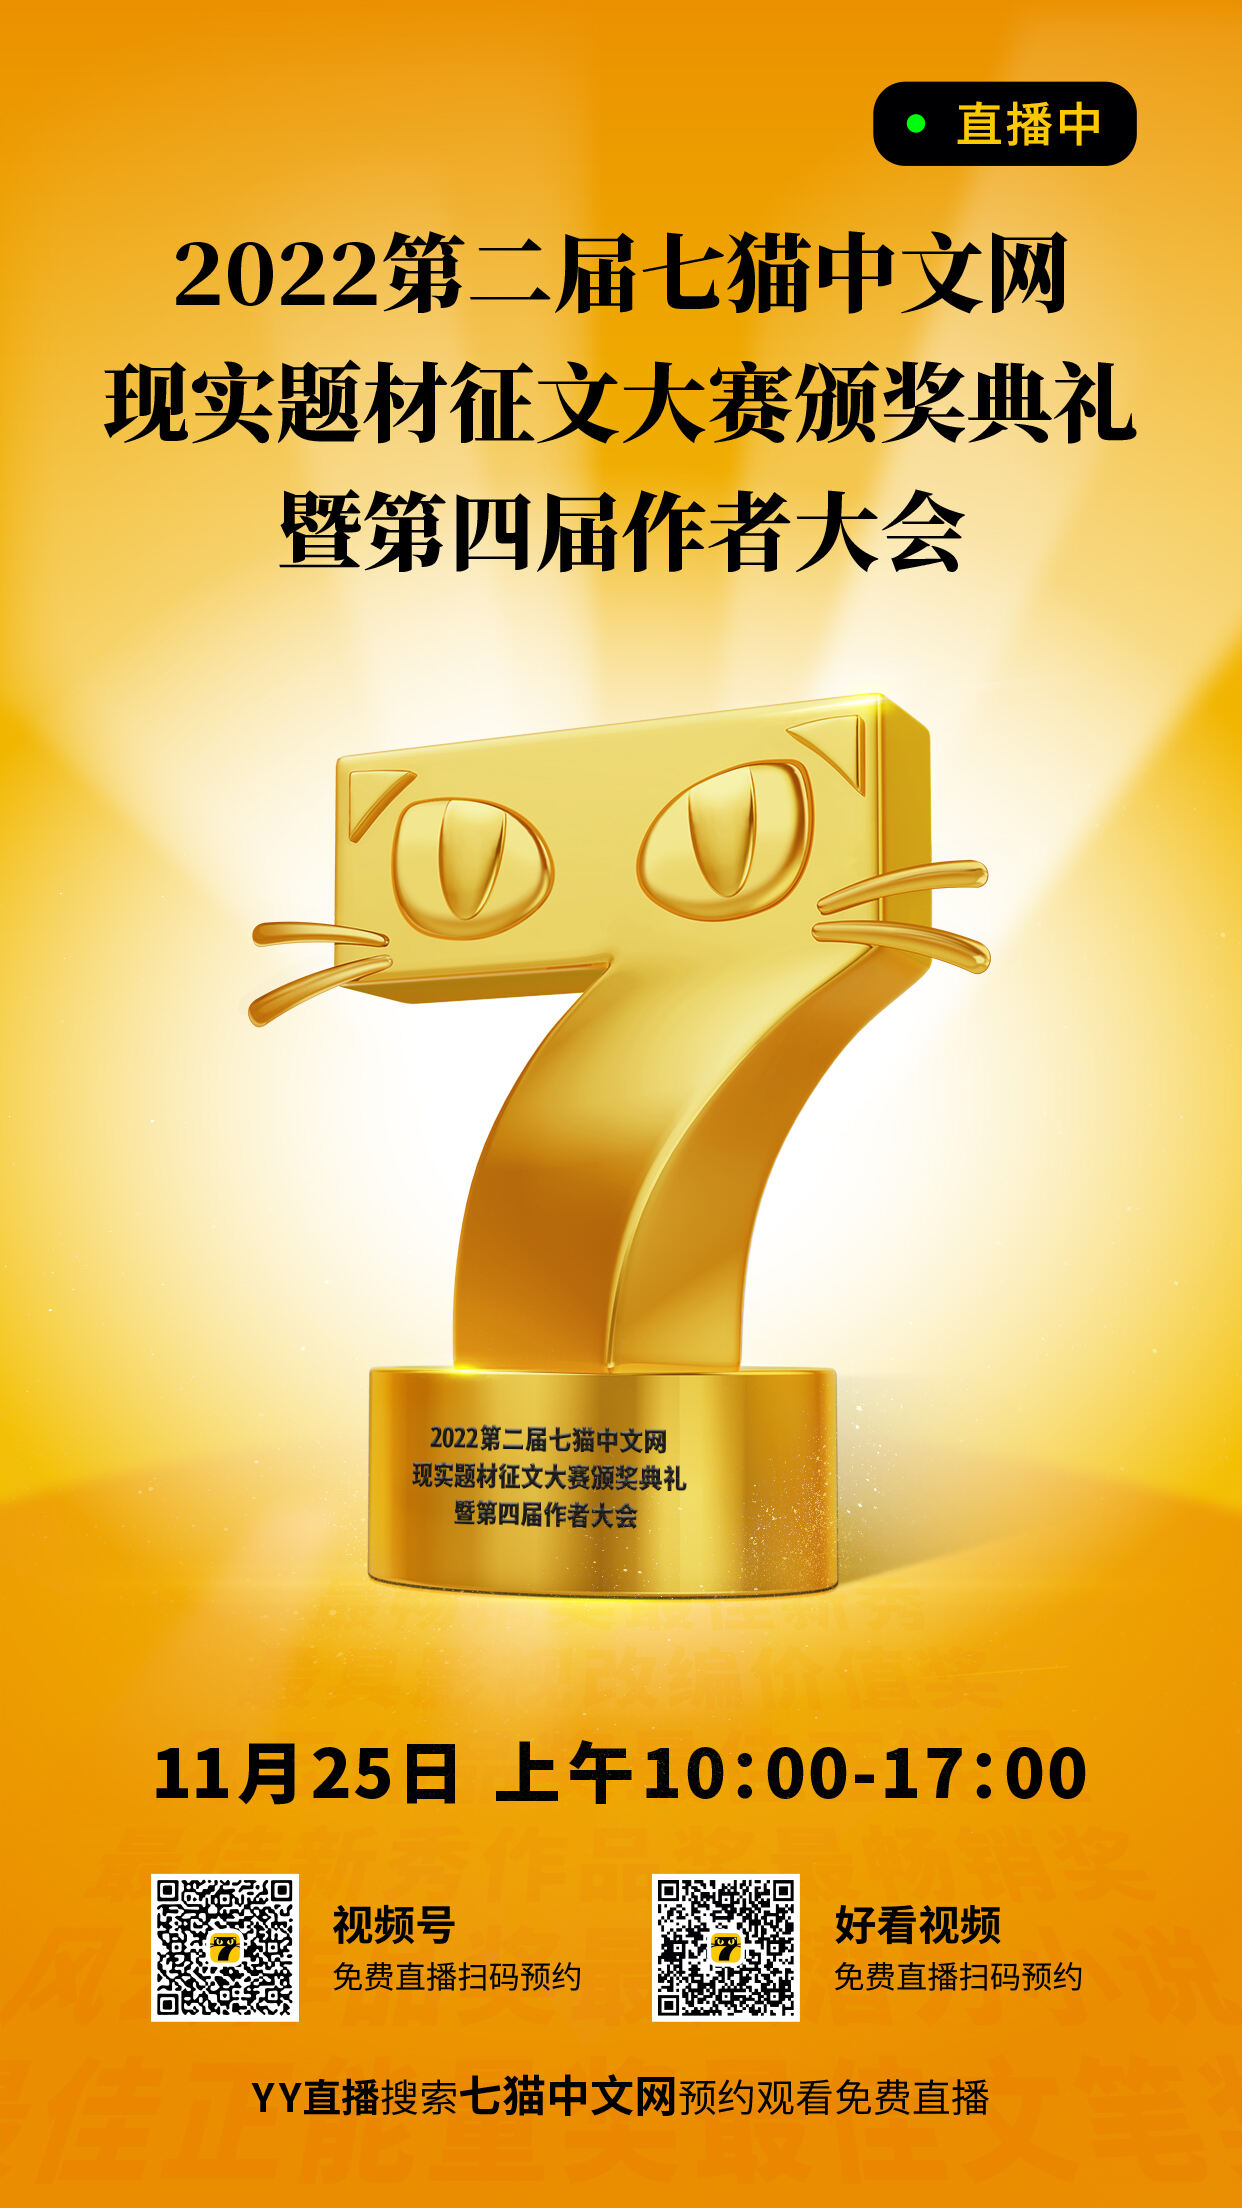 2022第二屆七貓中文網現實題材征文大賽頒獎典禮暨第四屆作者大會進行時